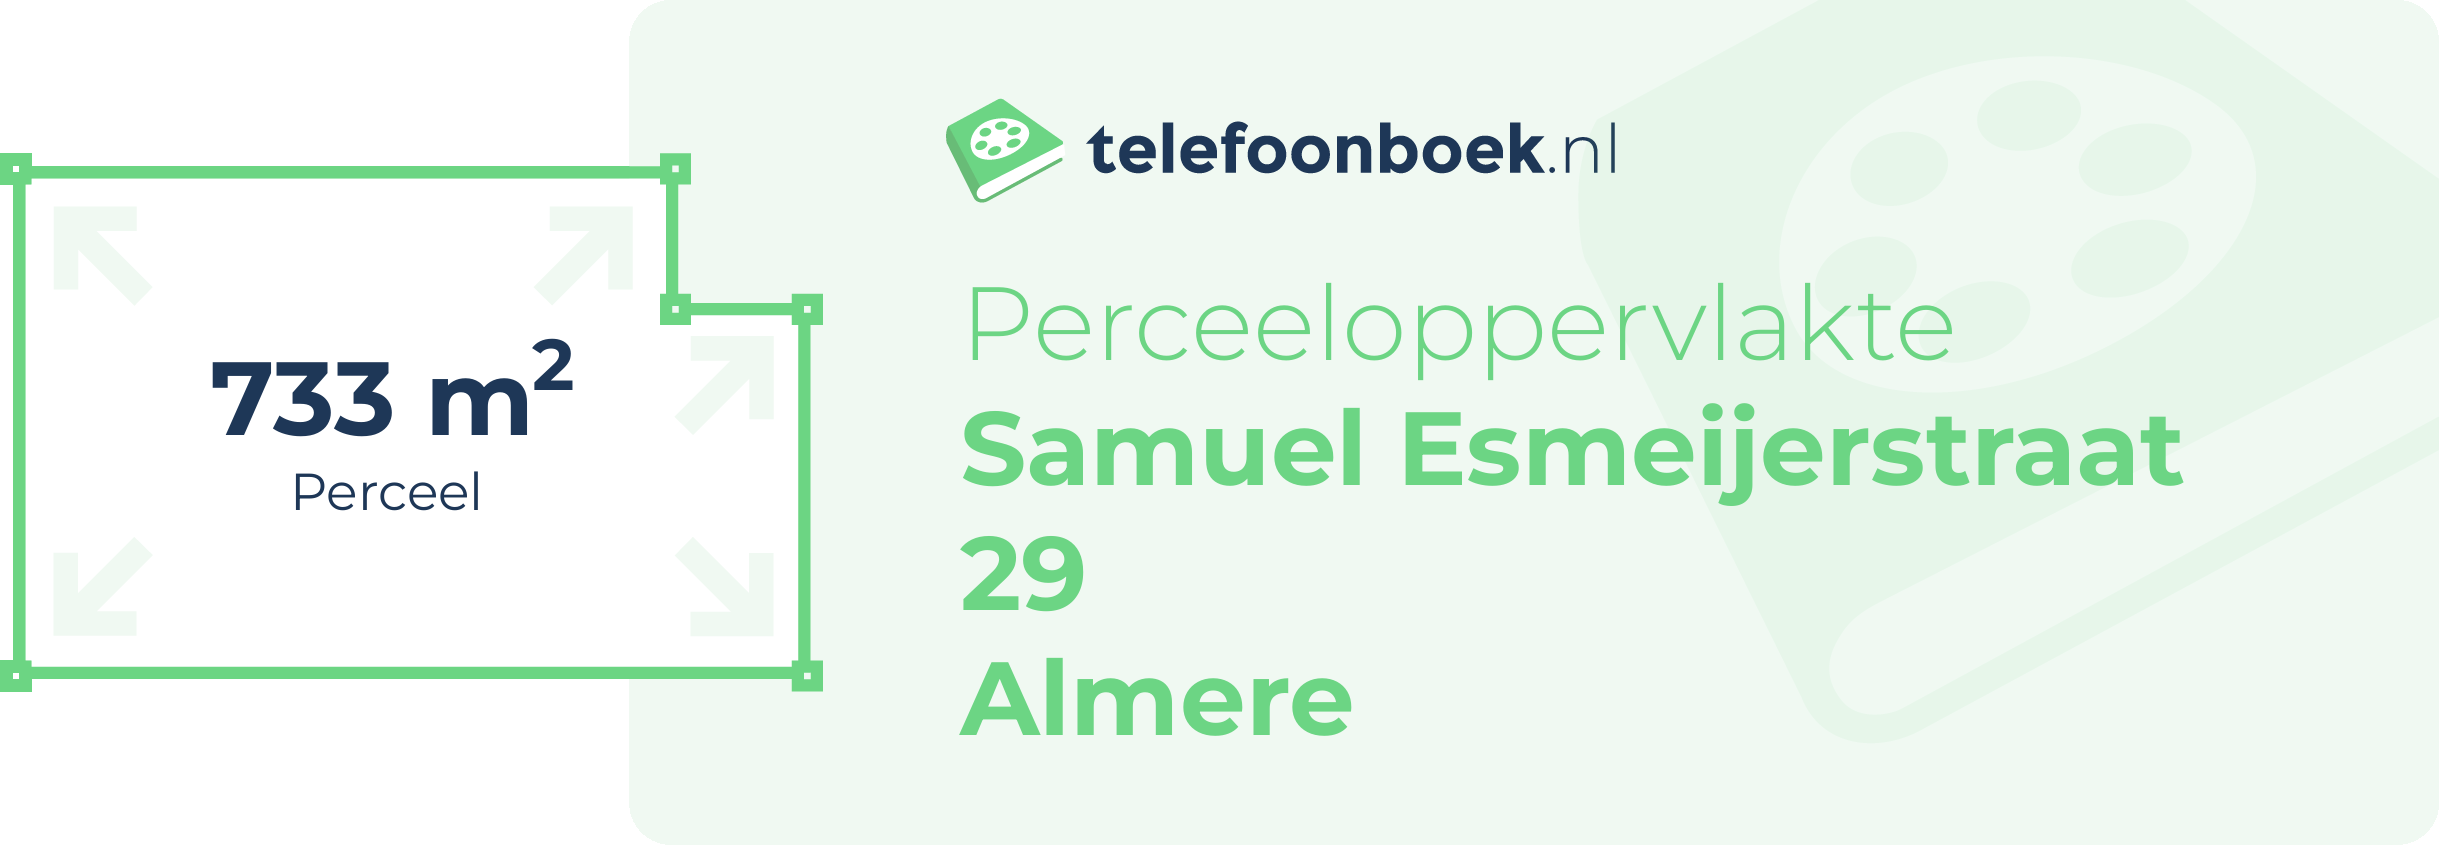 Perceeloppervlakte Samuel Esmeijerstraat 29 Almere